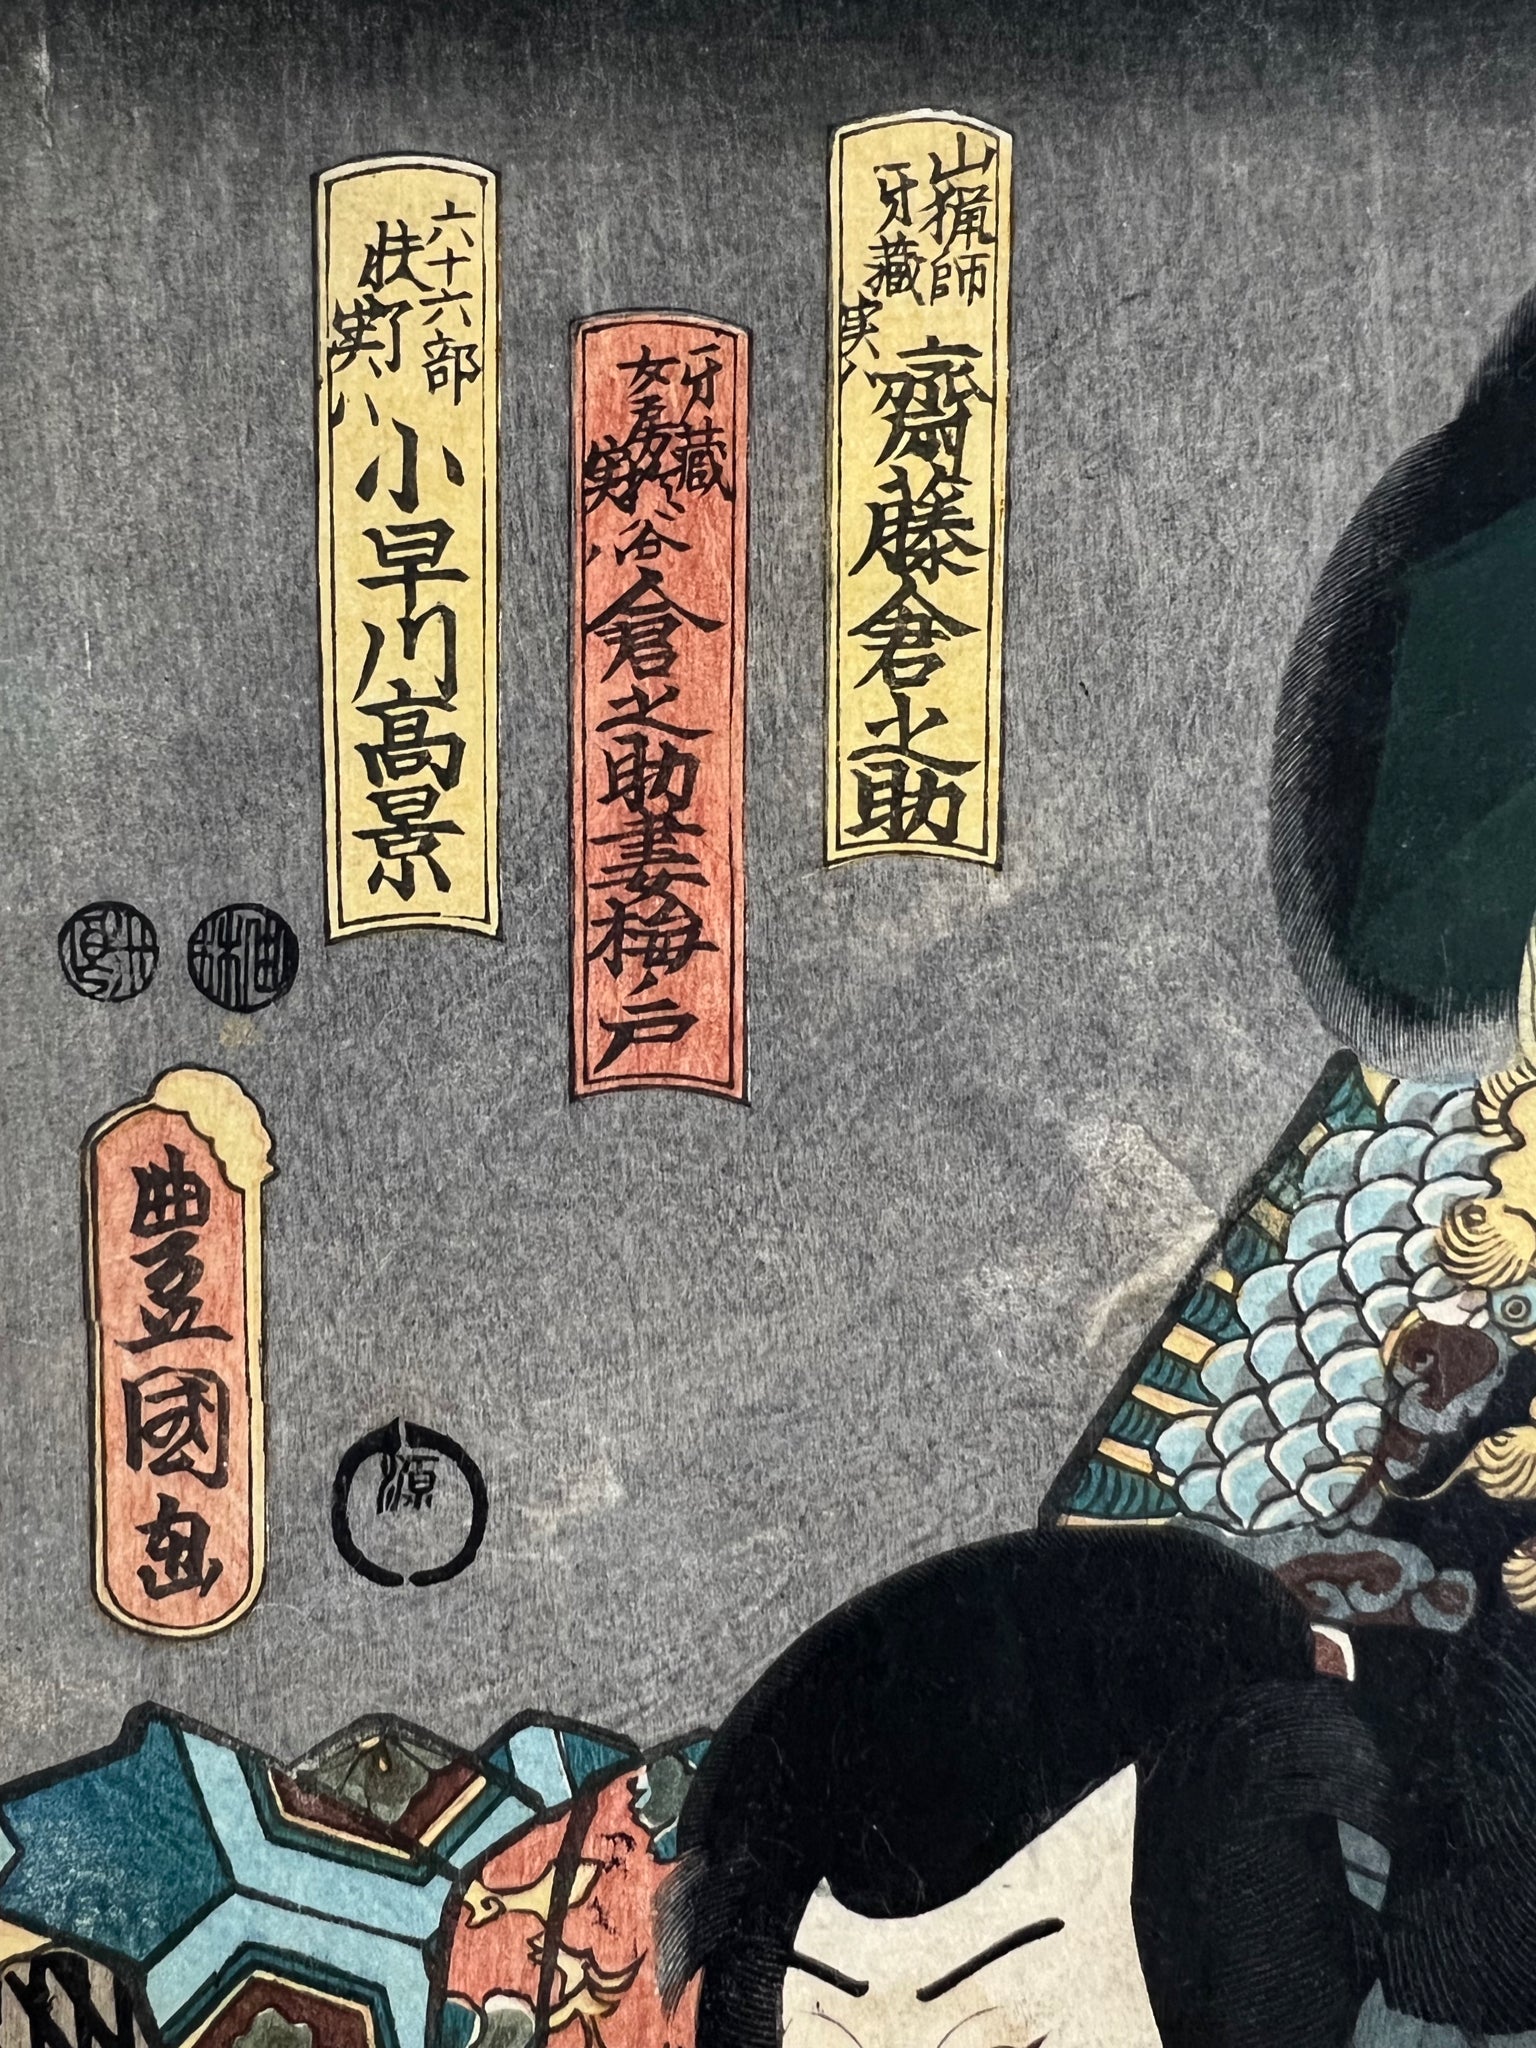 estampe japonaise originale de Kunisada représentant deus samouraïs dans une pièce de théâtre kabuki, détail des écritures japonaises